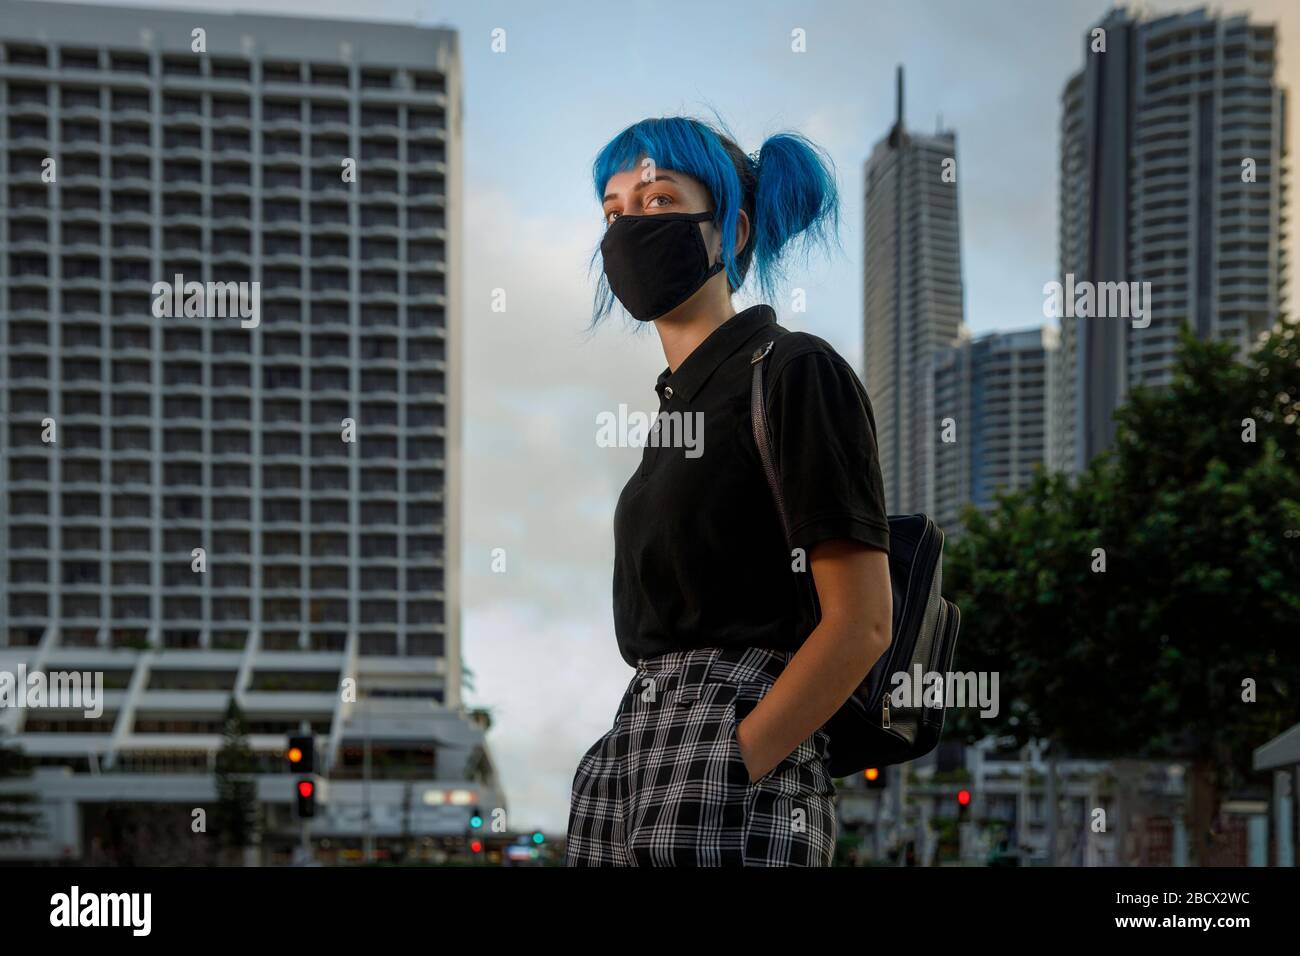 mujer joven con máscara médica en la calle moderna de la ciudad, chica de moda con el pelo azul con máscara médica protectora en medio de temores coronavirus Foto de stock